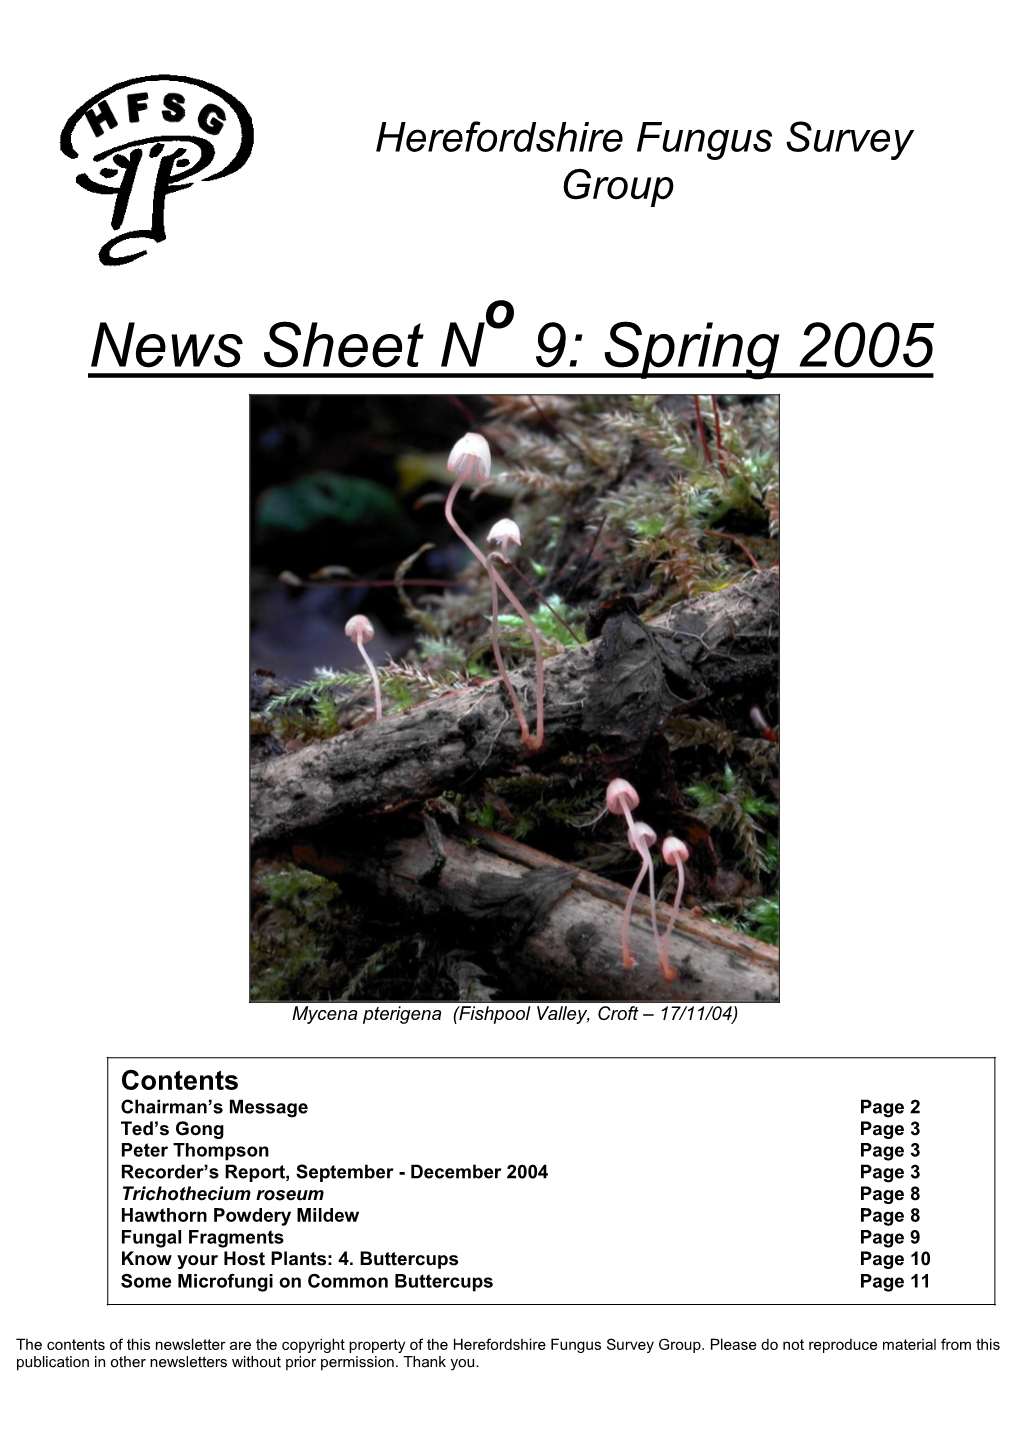 News Sheet N 9: Spring 2005